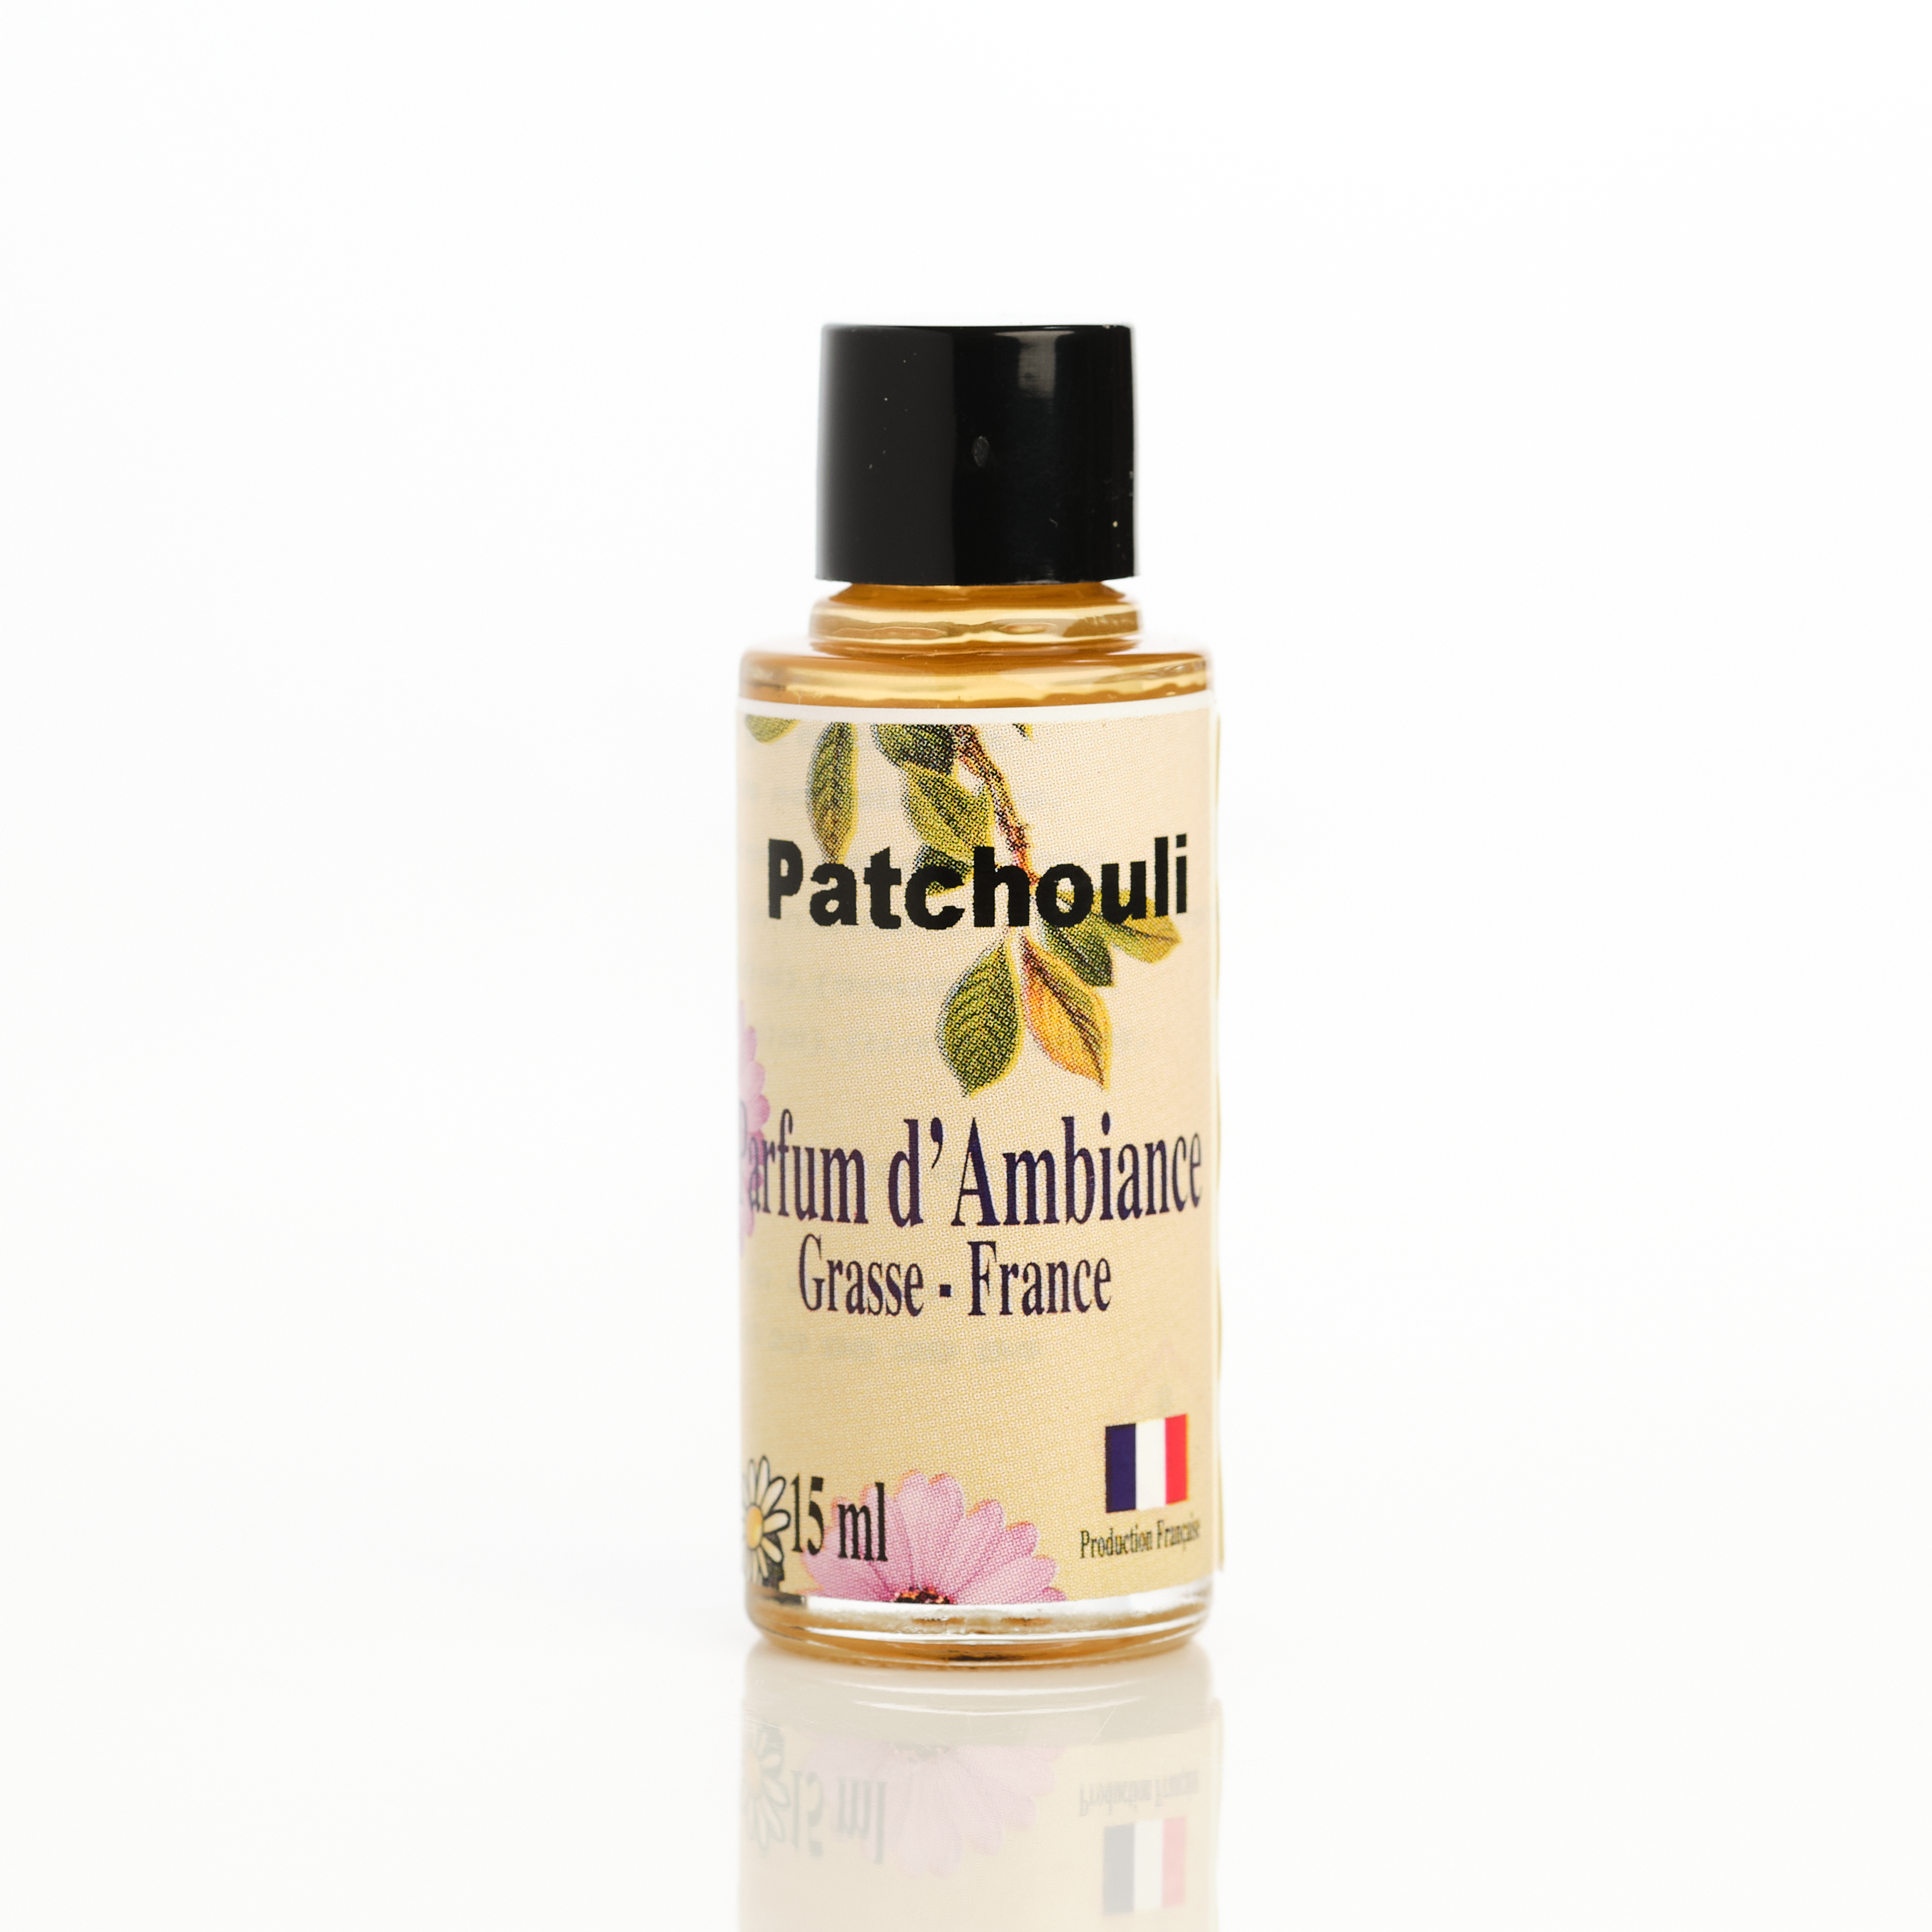 achat concentré parfum dambiance Grasse patchouli pour parfumer la maison odeur maison fraîche